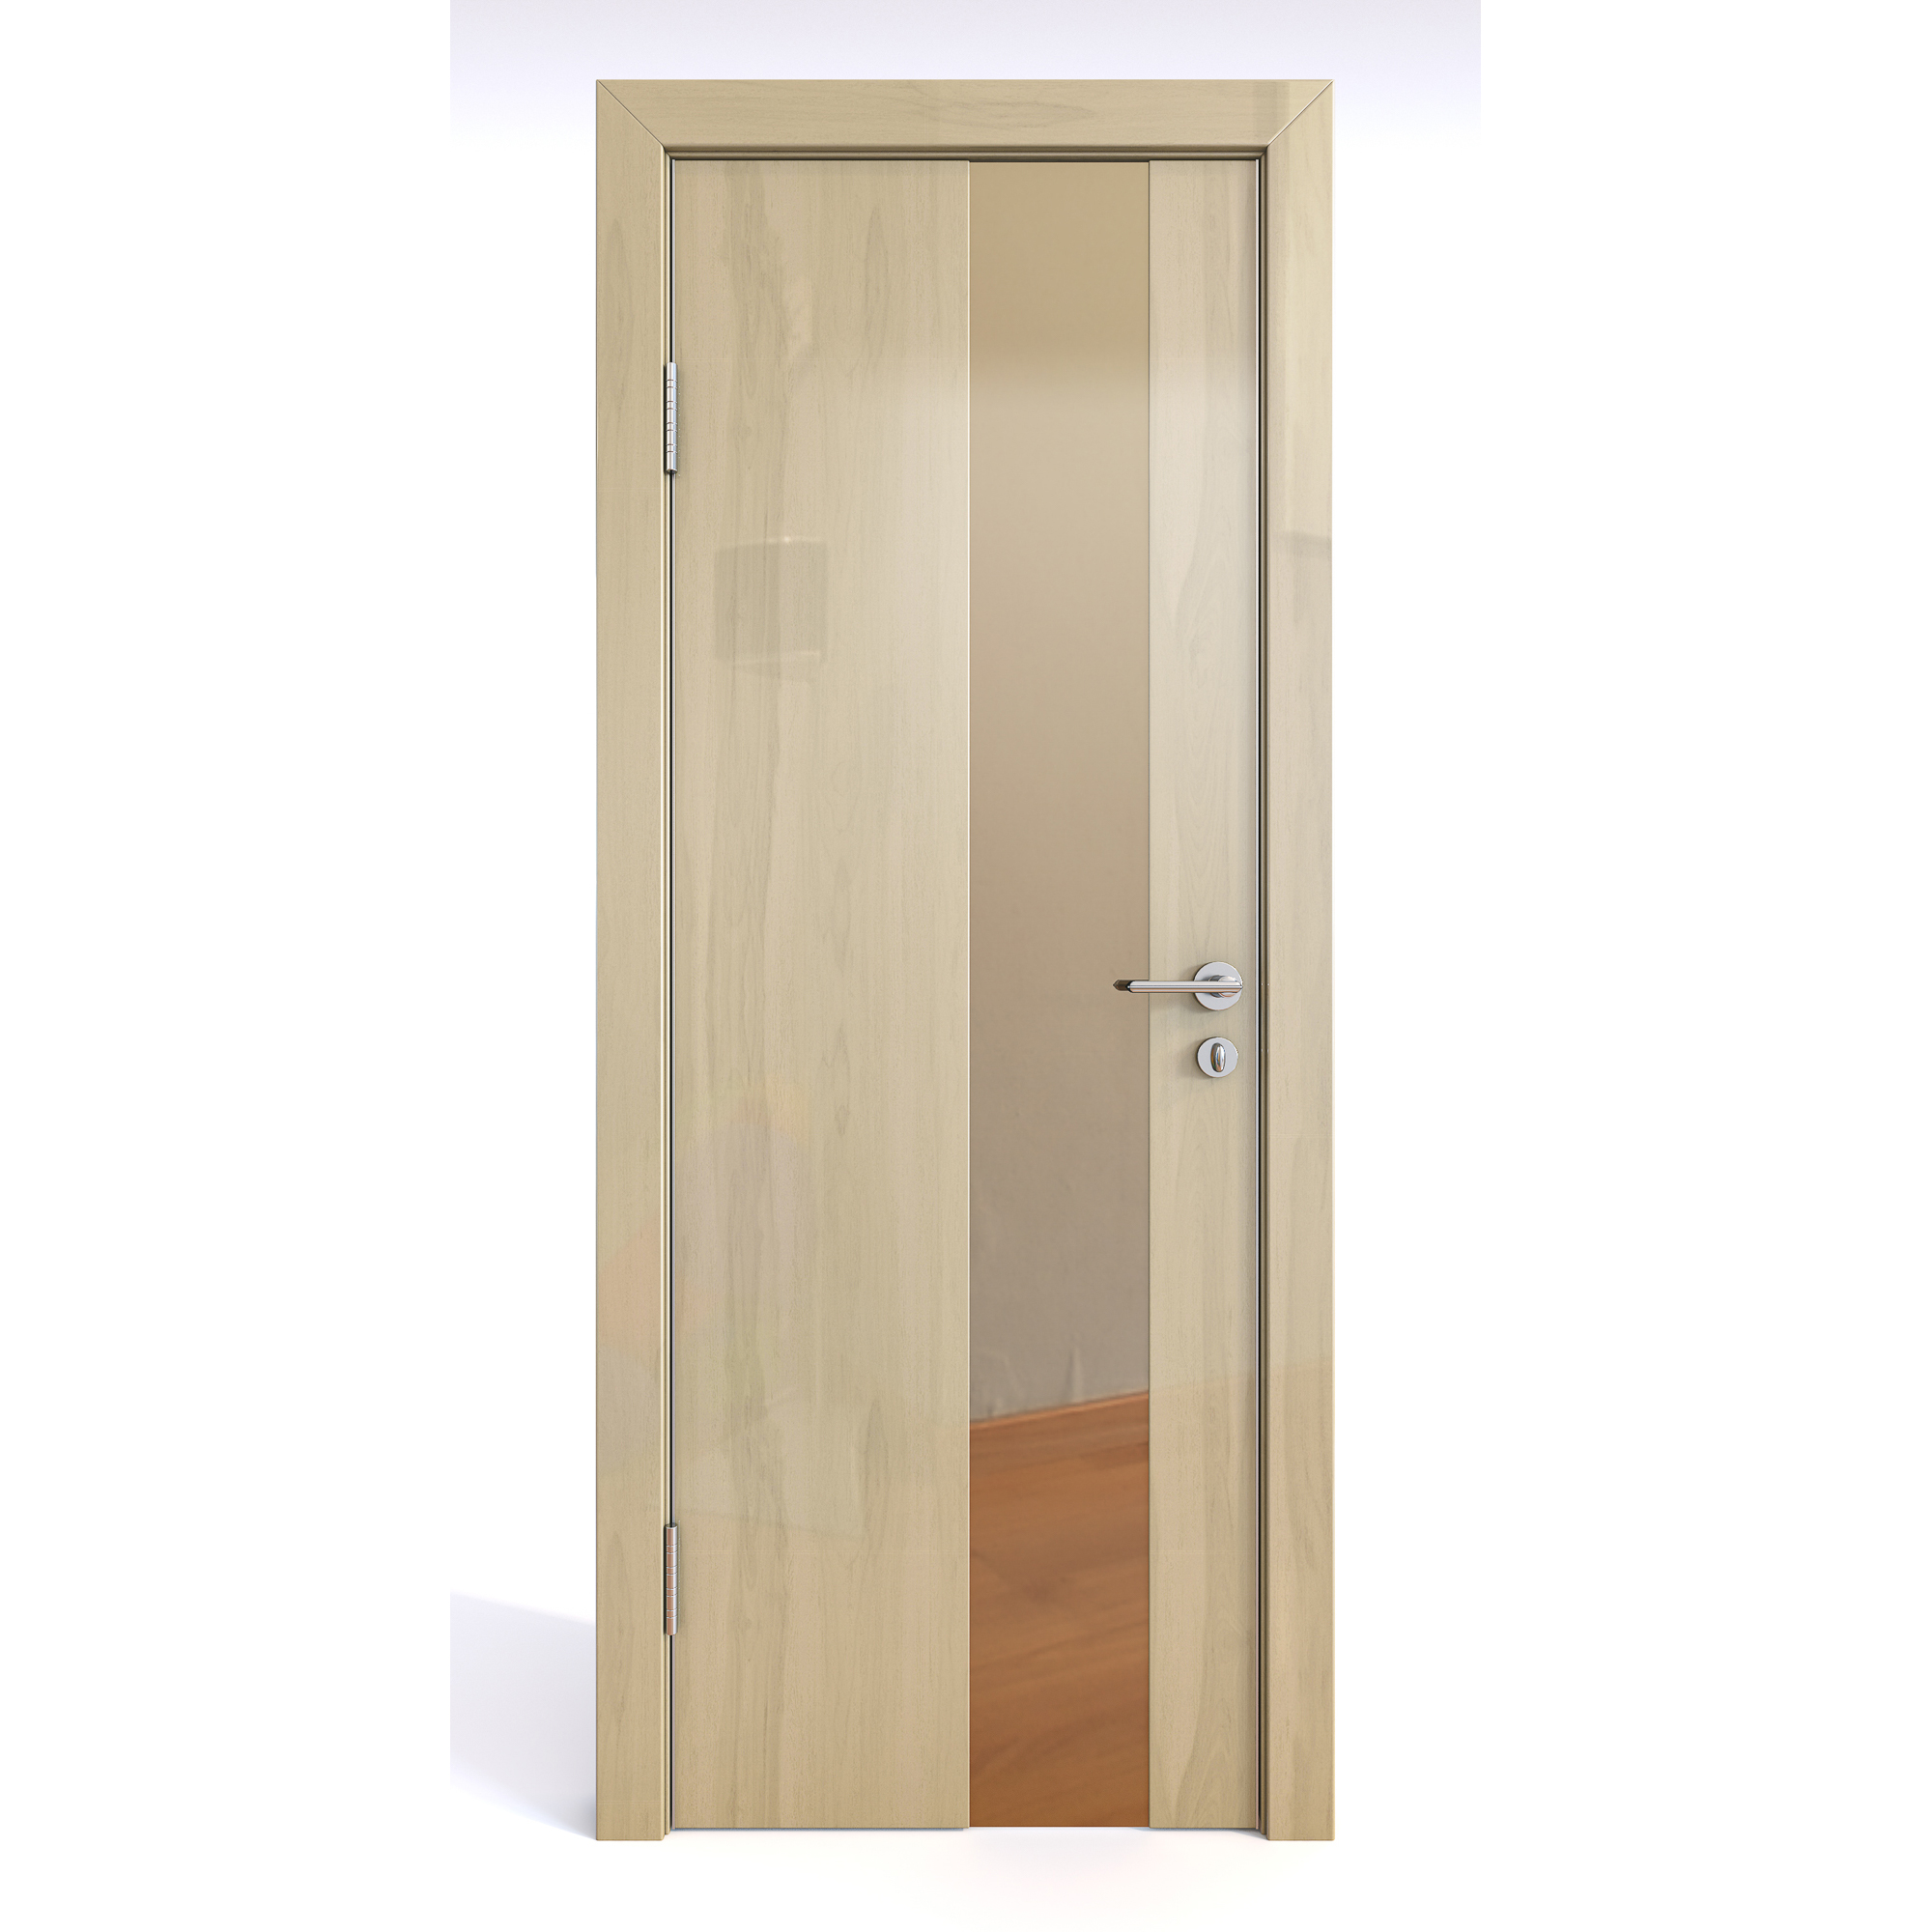 фото Межкомнатная шумоизоляционная дверь до-604/2анегри светлый глянец/бронза200х70 дверная линия